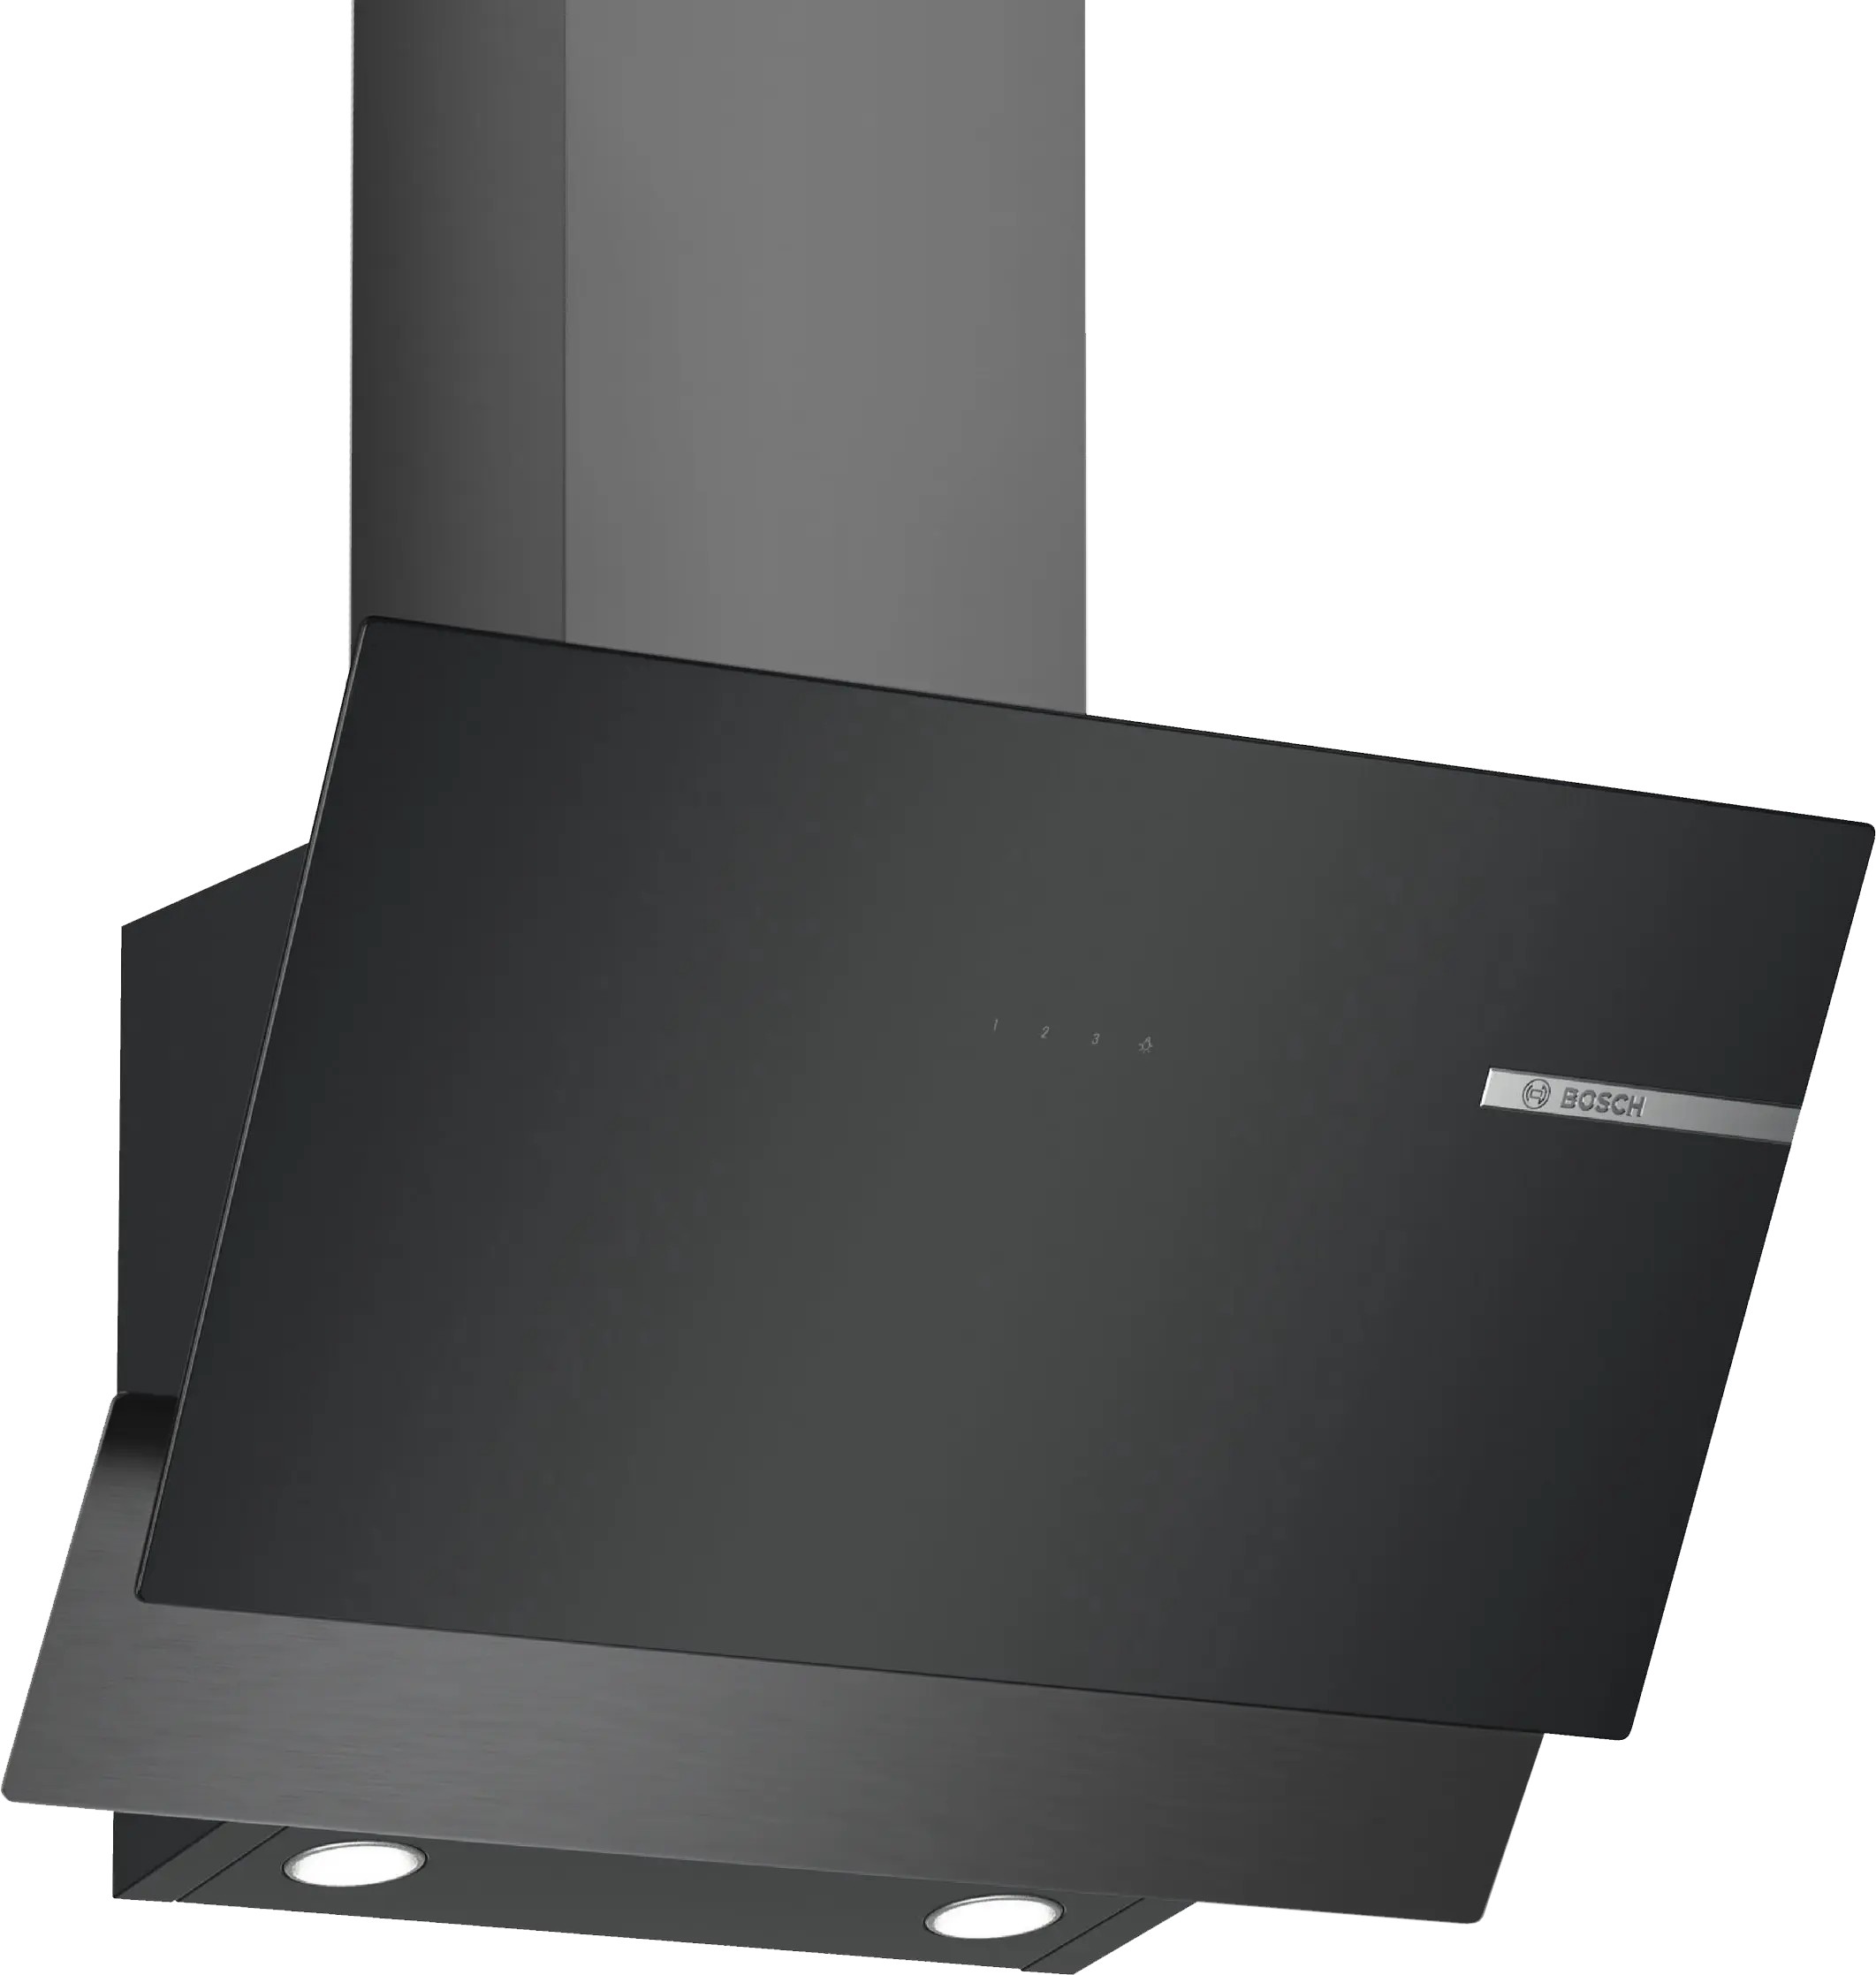 Кухонная вытяжка Bosch DWK65AD30R в интернет-магазине, главное фото